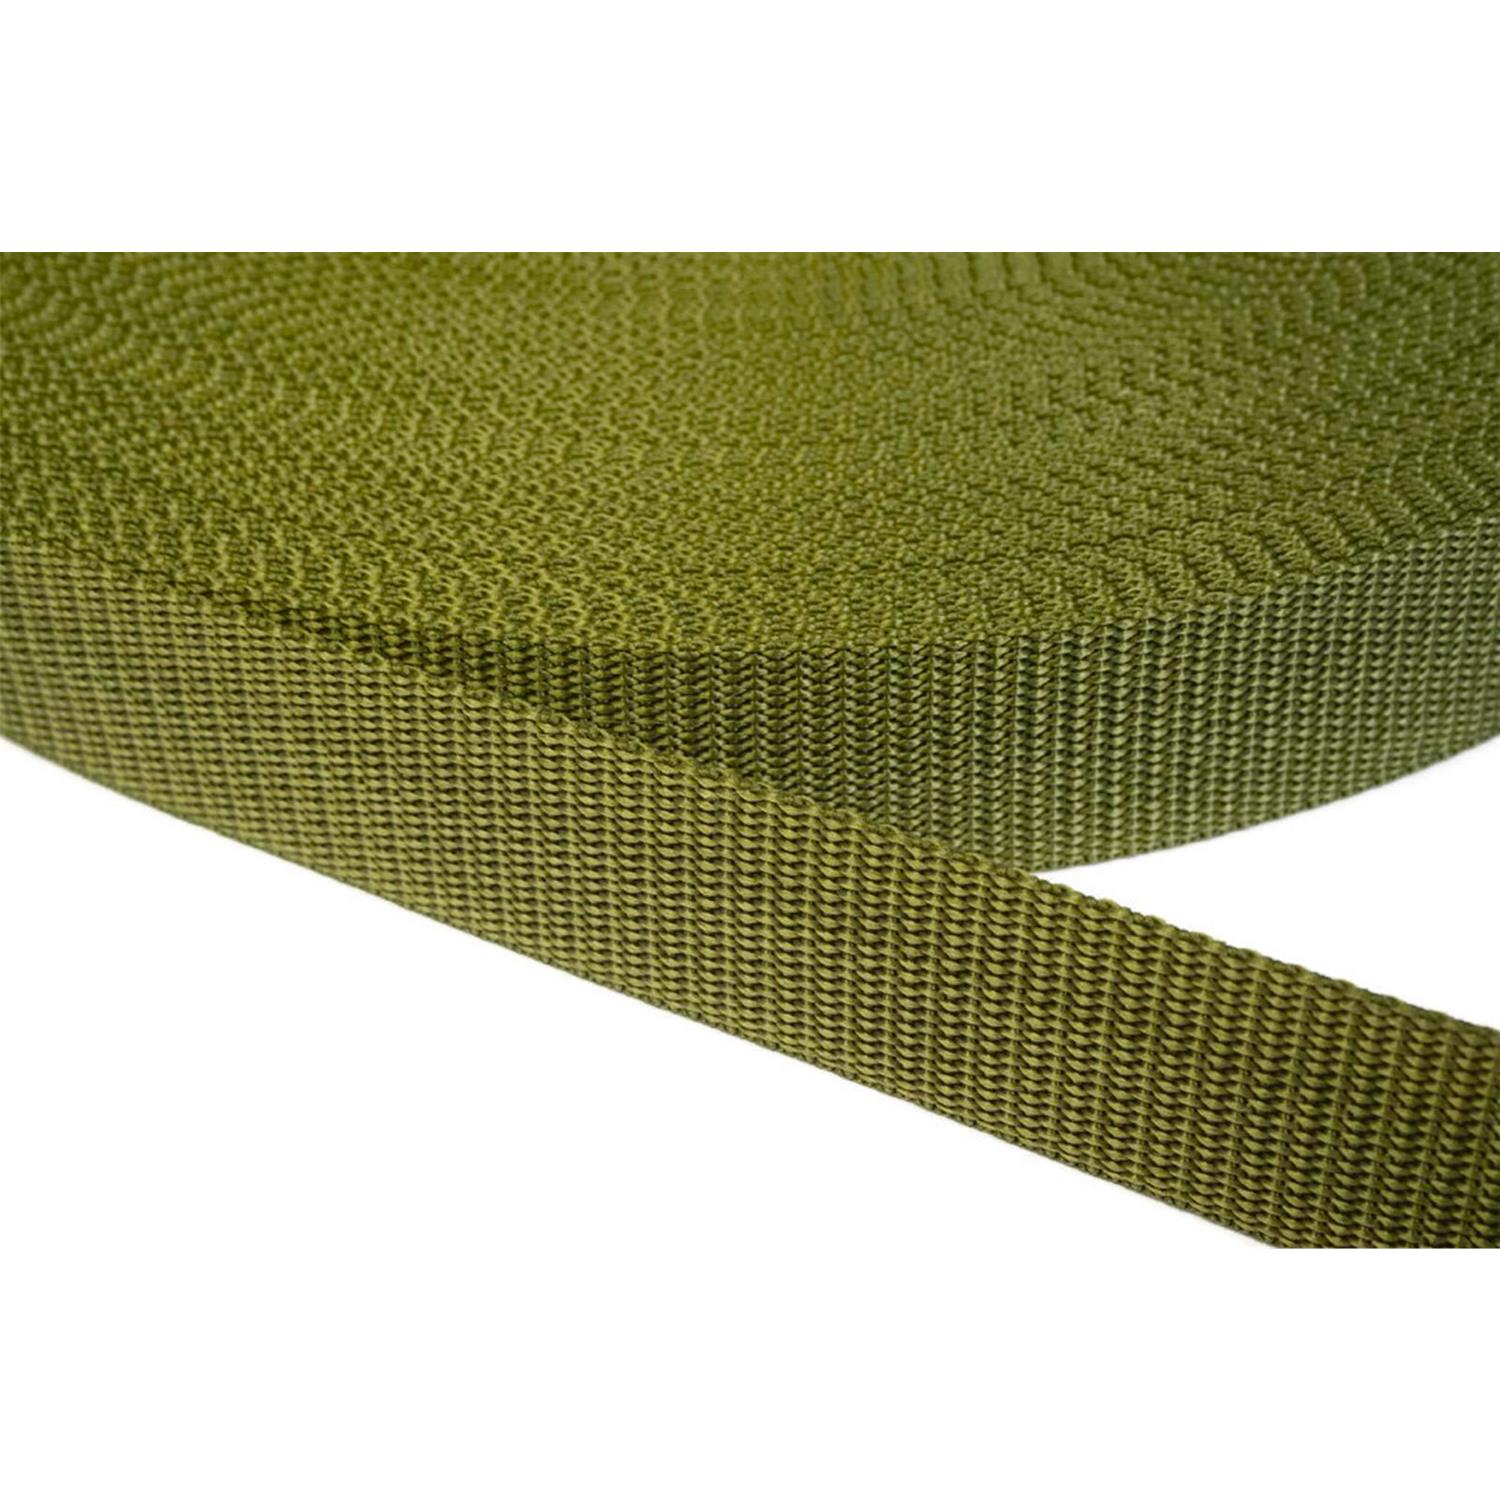 Gurtband 40mm breit aus Polypropylen in 41 Farben 43 - olivgrün 06 Meter